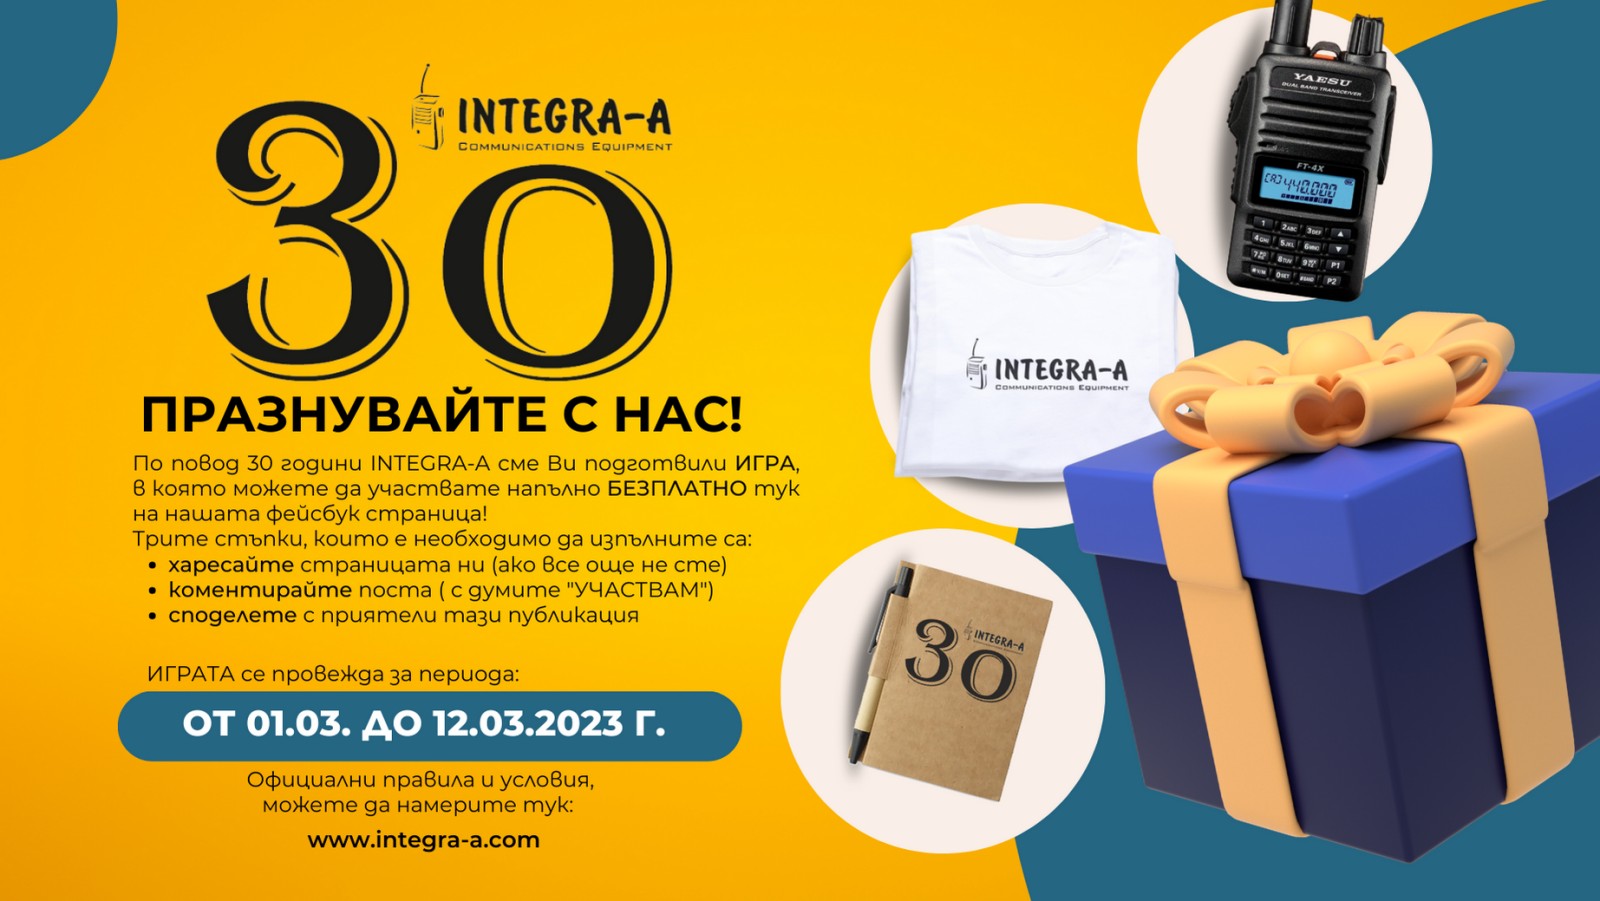 Празнувайте с нас 30 години INTEGRA-A! | Integra-a